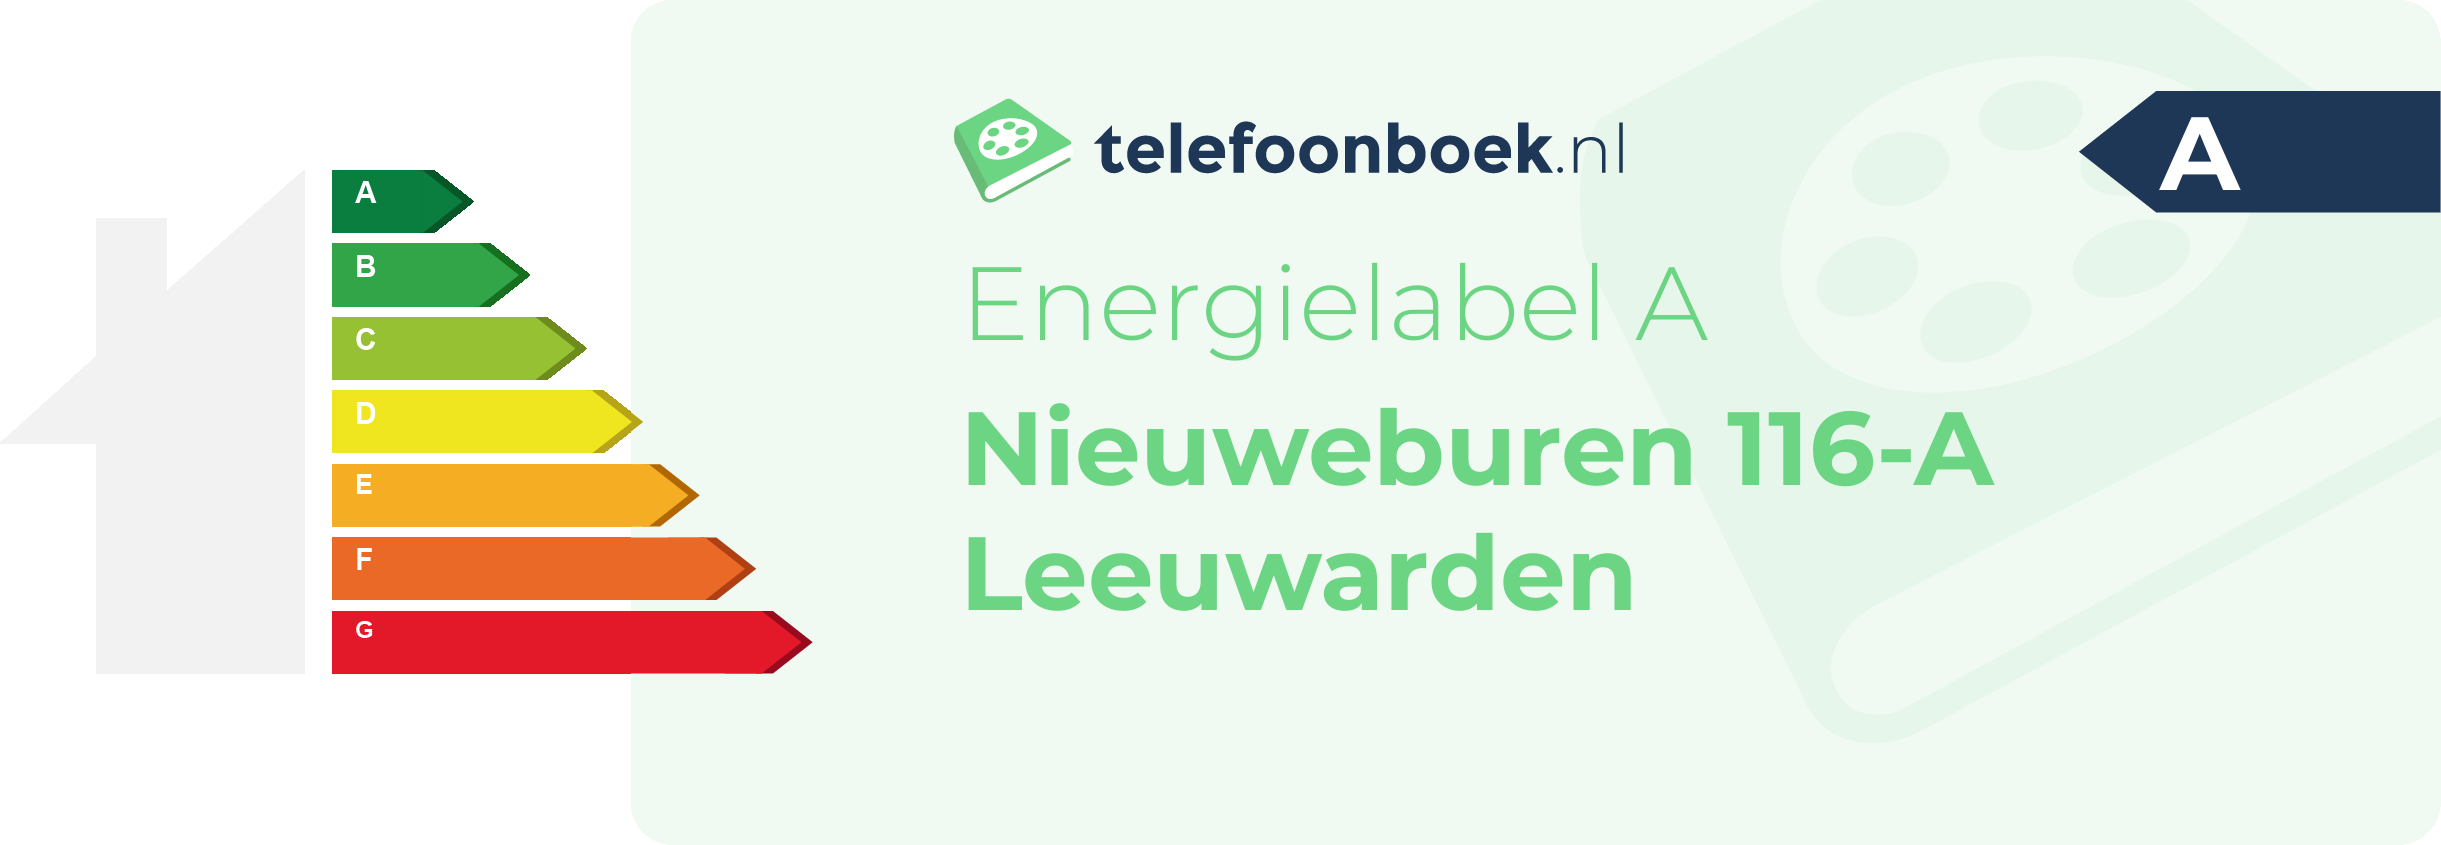 Energielabel Nieuweburen 116-A Leeuwarden